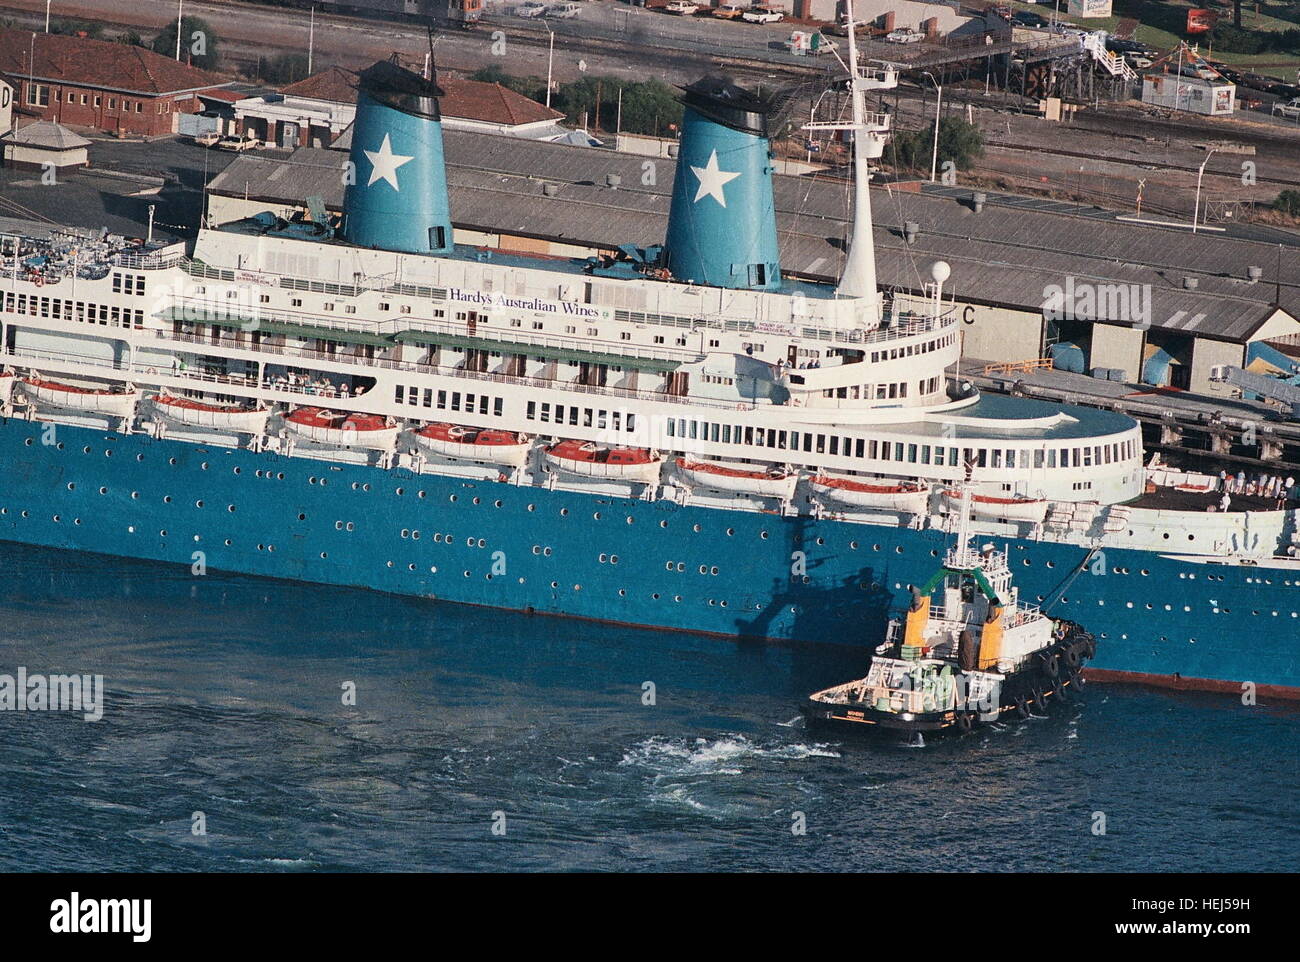 Ajaxnetphoto 1986 Fremantle Australia Hijacked Cruise